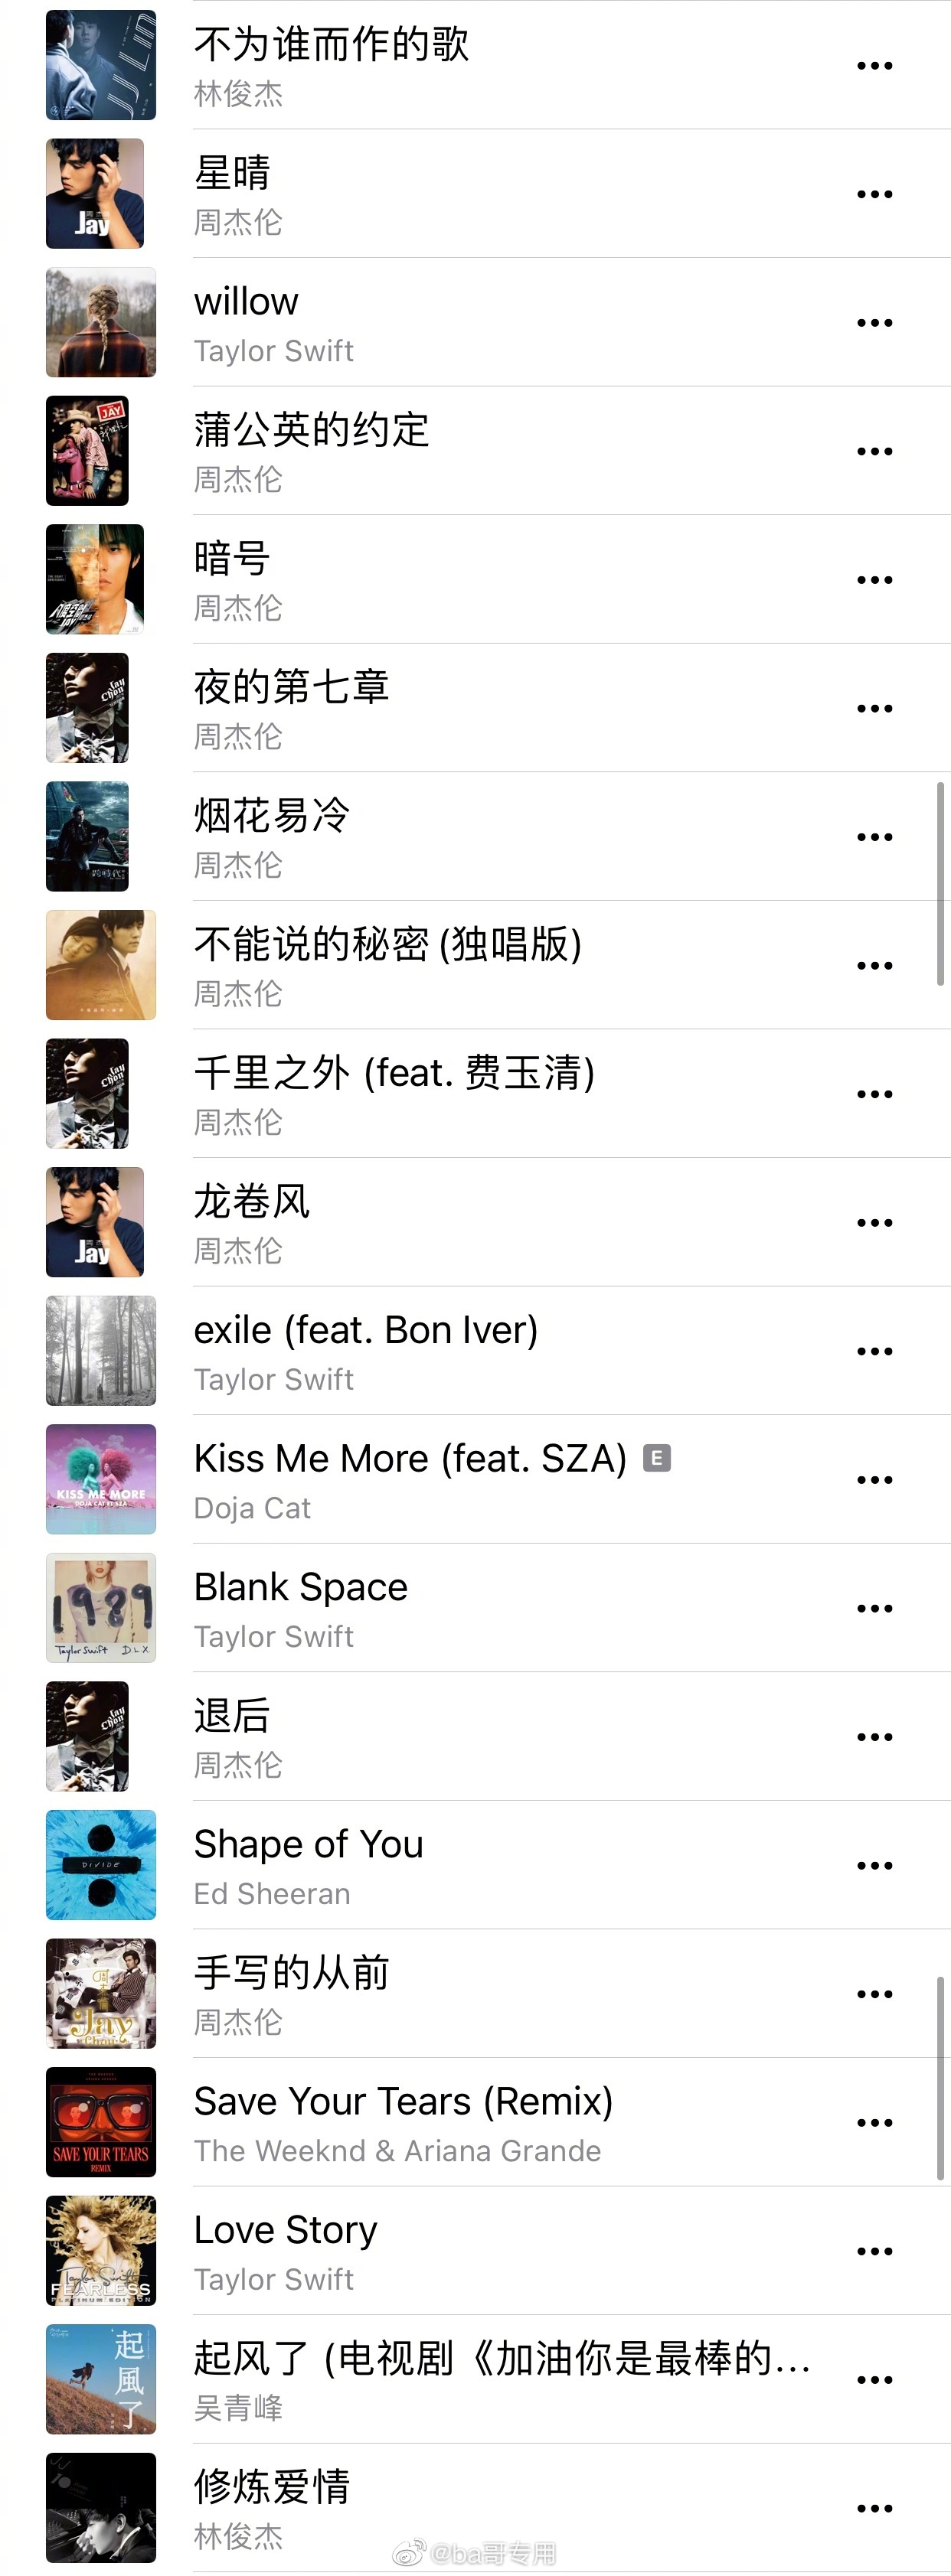 2021歌曲排行榜前100首_2021年度最热歌曲榜单:周杰伦占据半壁江山,前10名独占9首